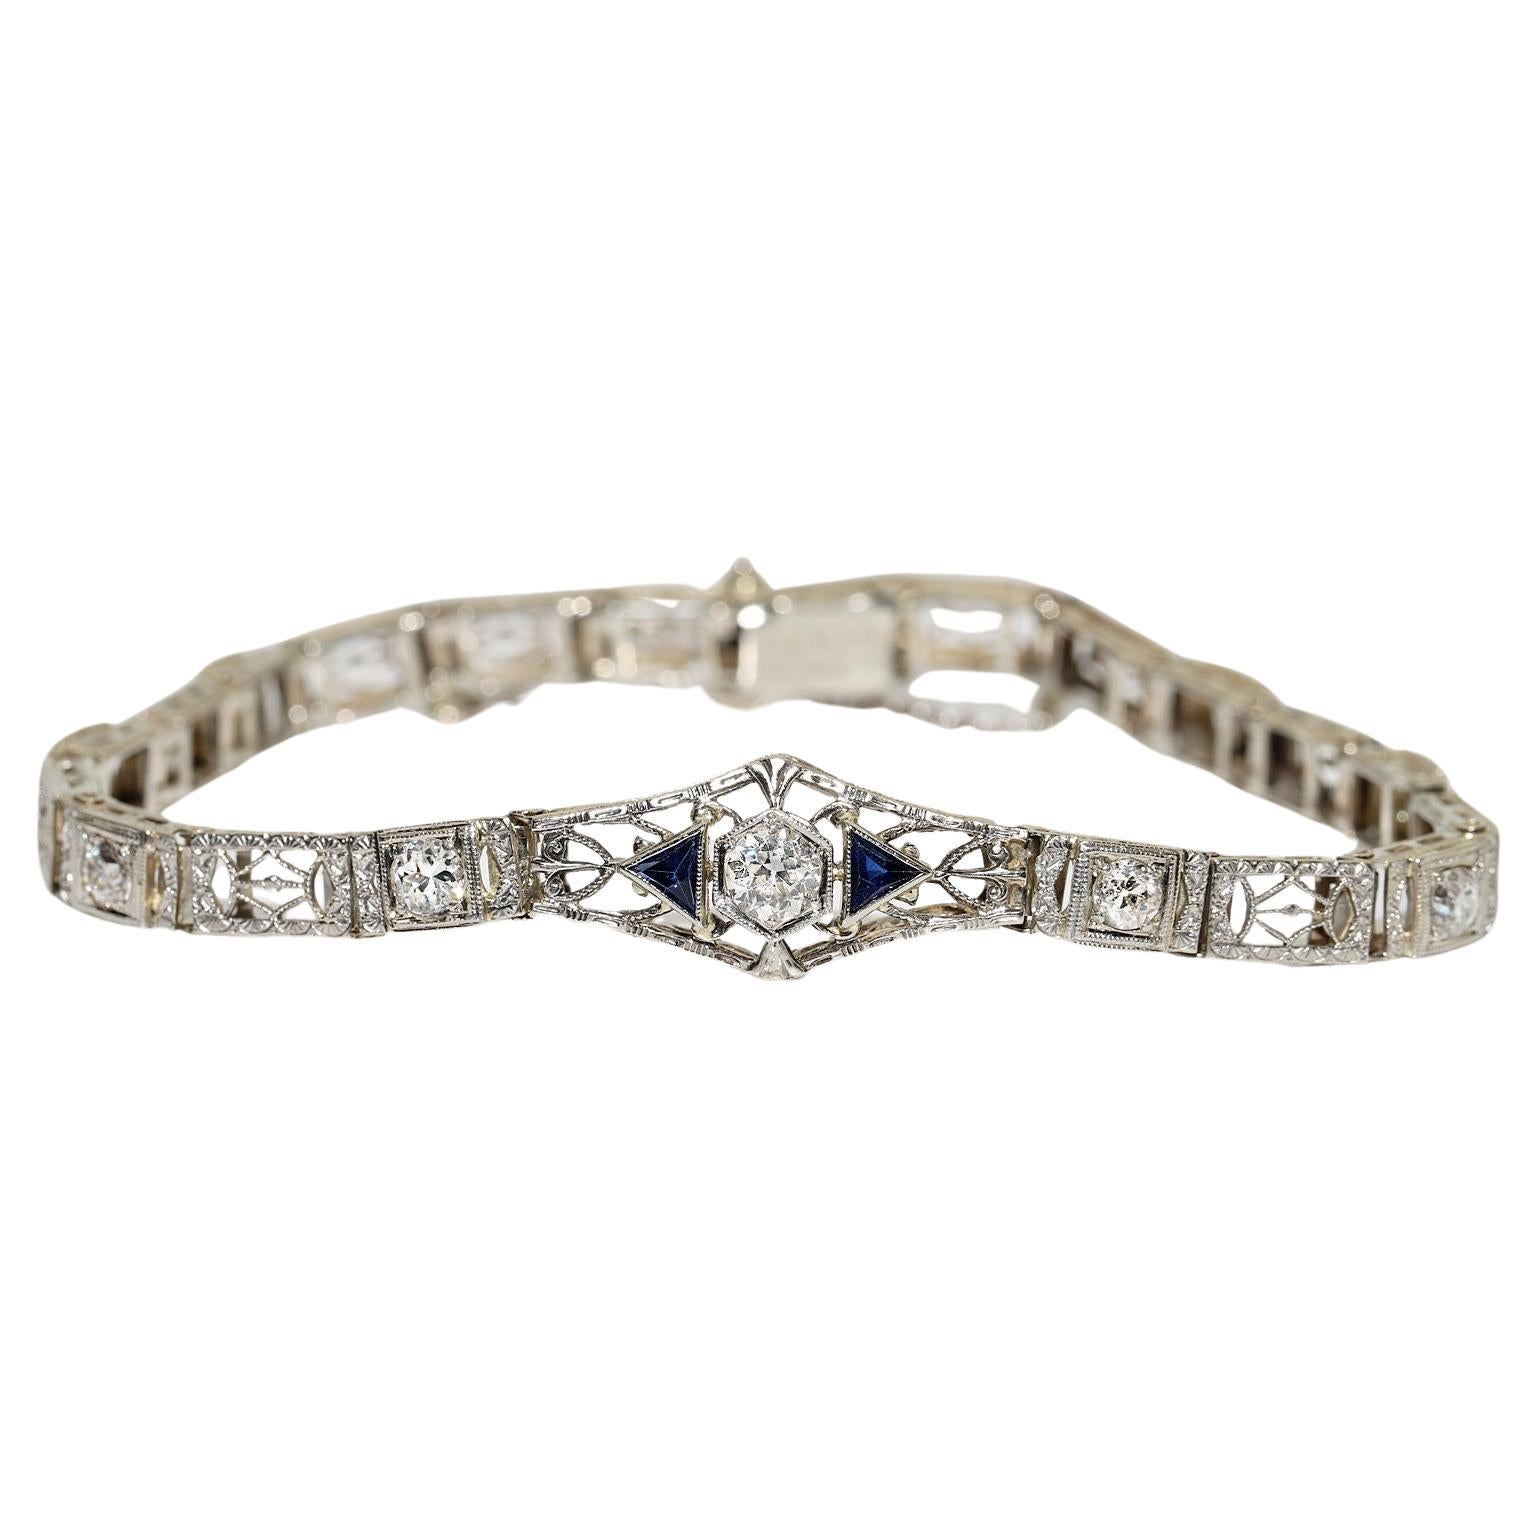 Antique Art Deco 14k Gold Top Platinum Natural Diamond And Sapphire Bracelet